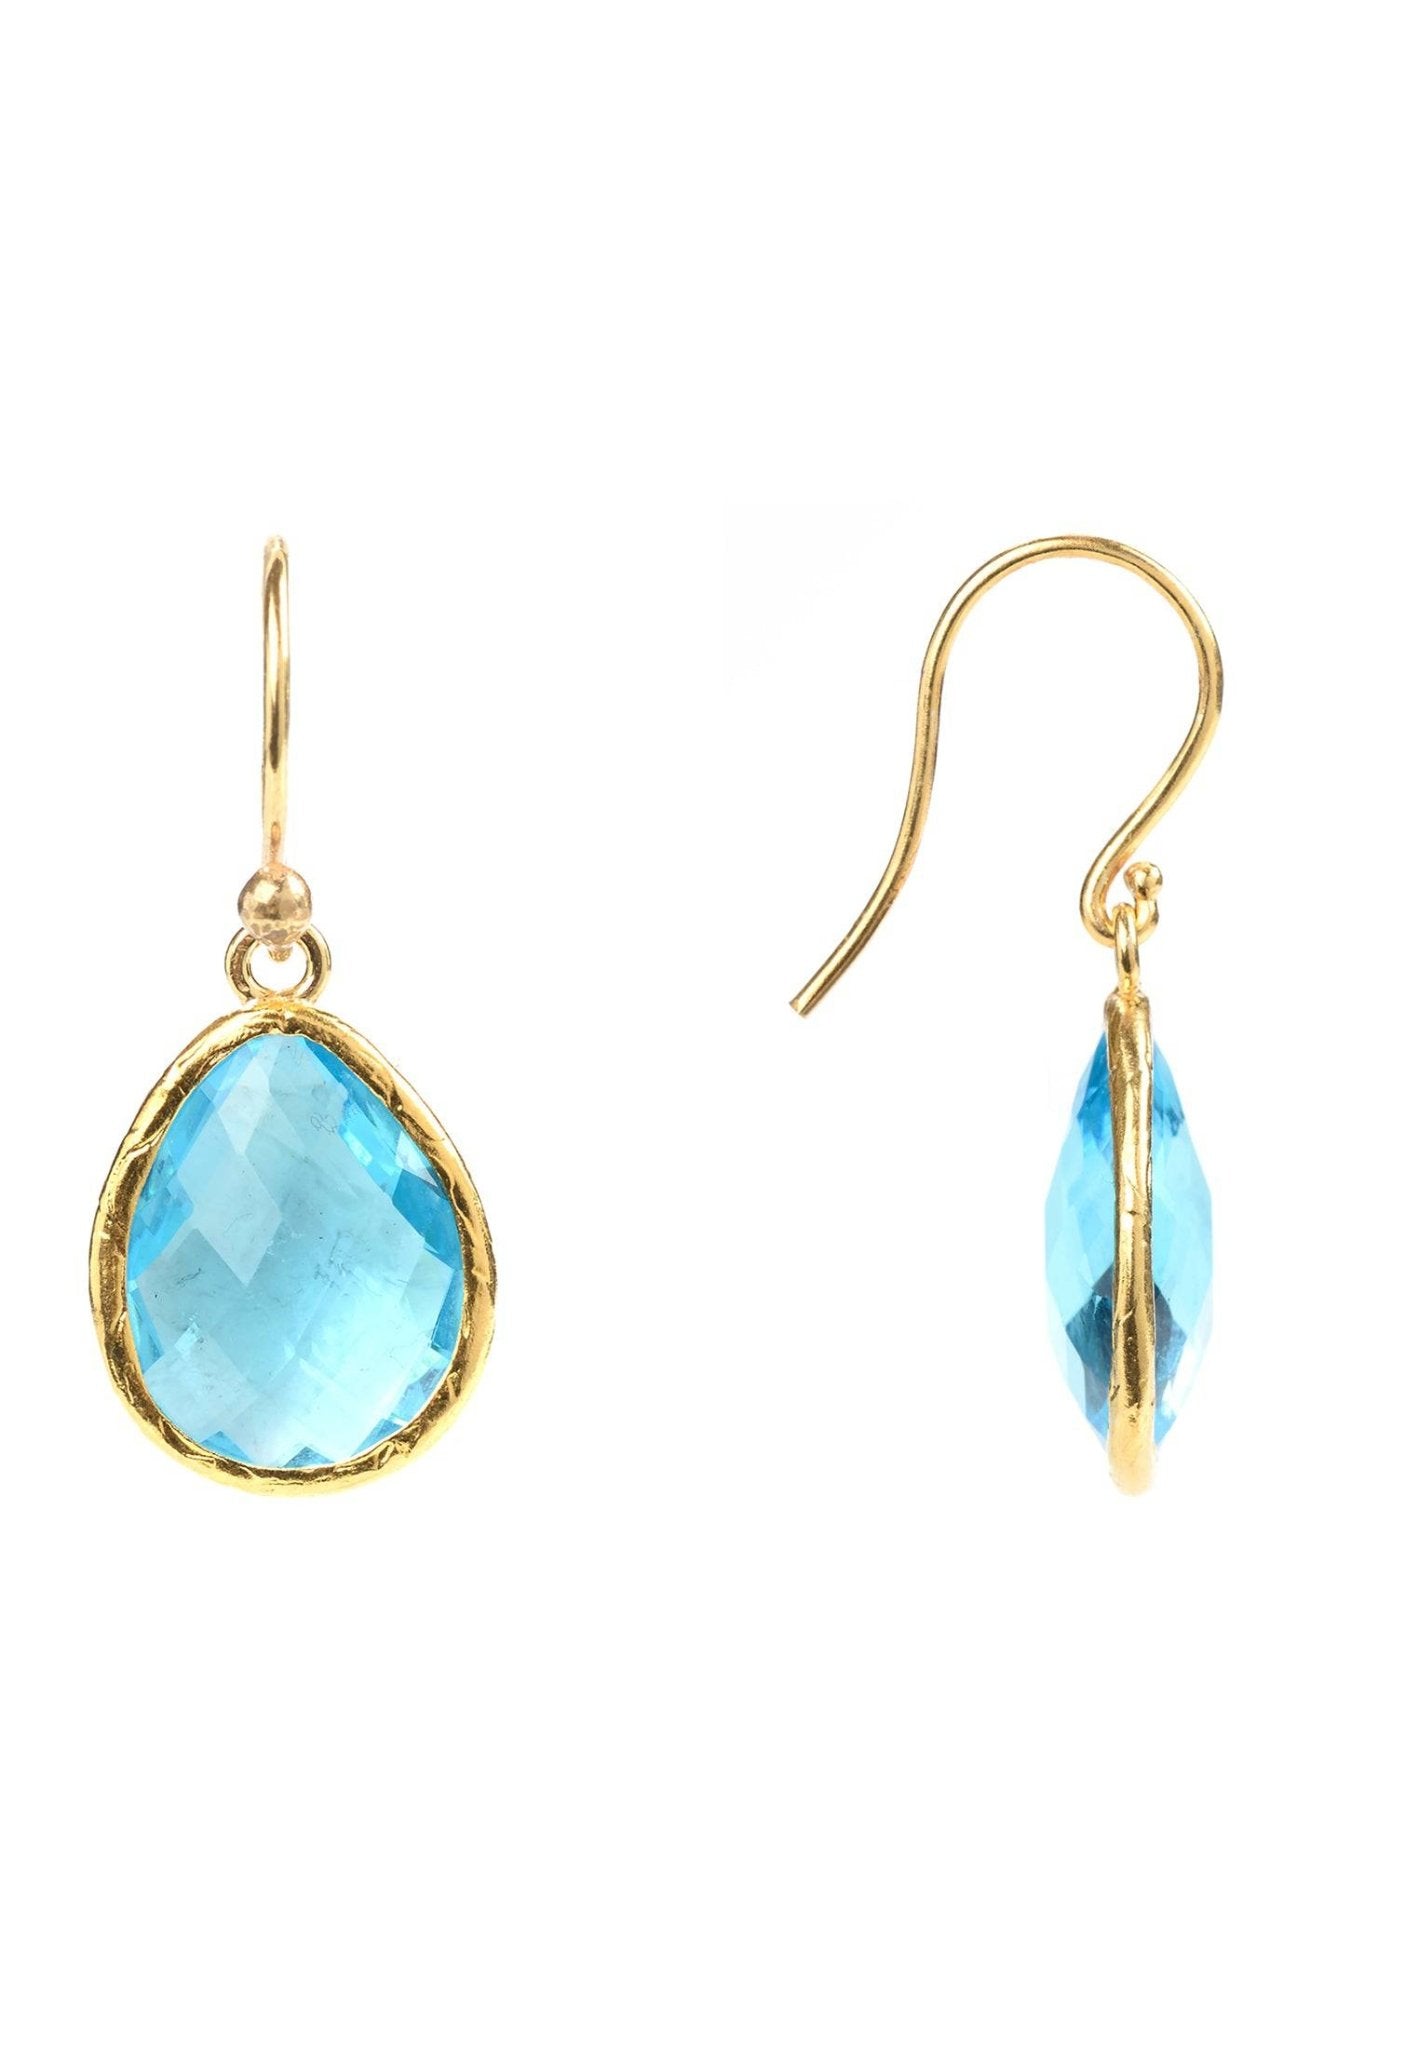 Petite Drop Earrings Blue Topaz Hydro Gold - LATELITA Earrings